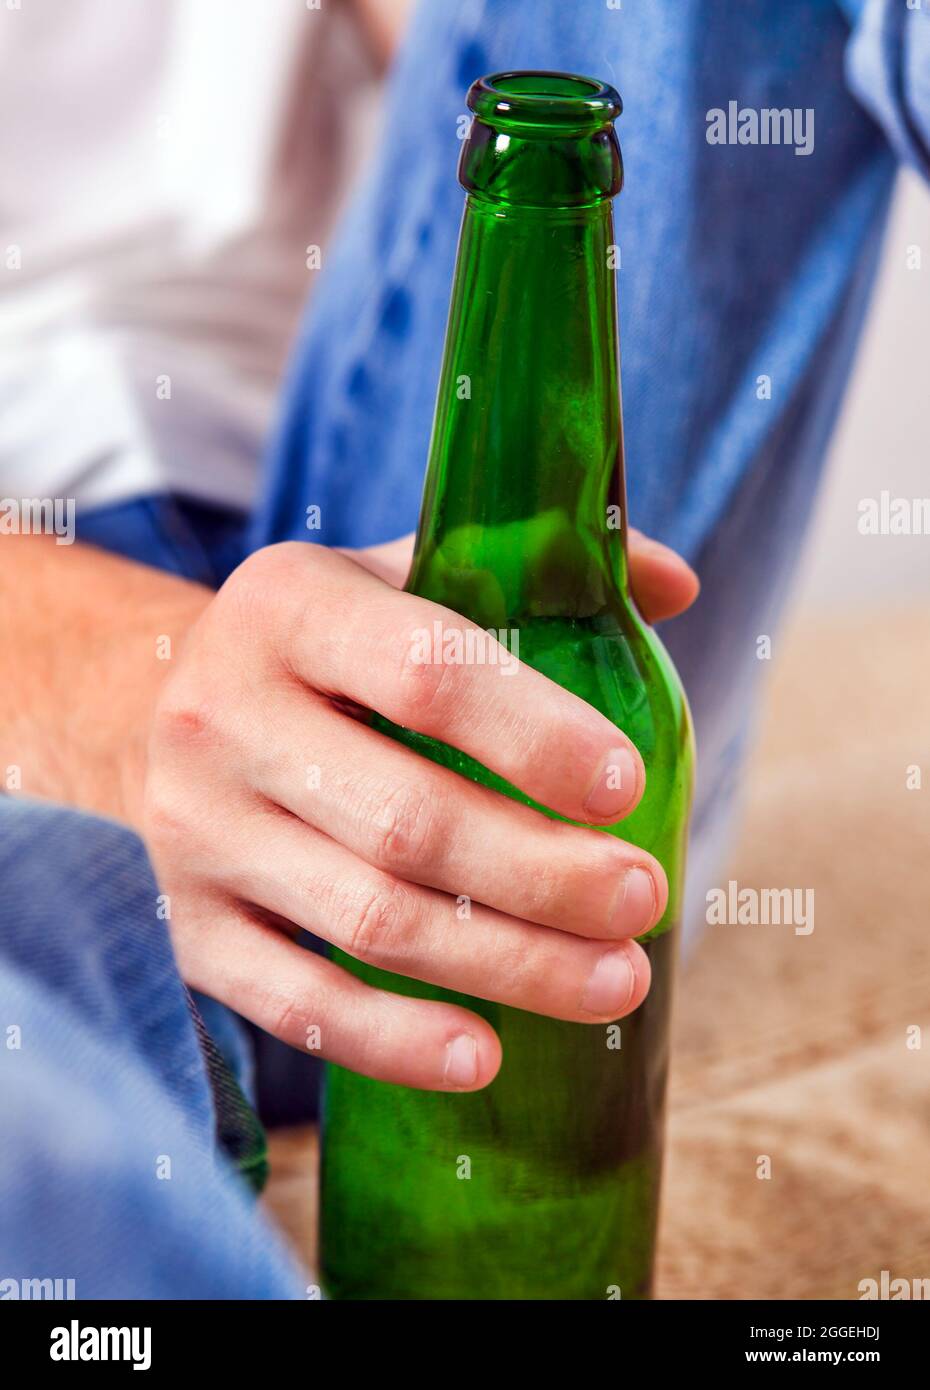 La personne tient la bouteille de bière dans la main Photo Stock - Alamy